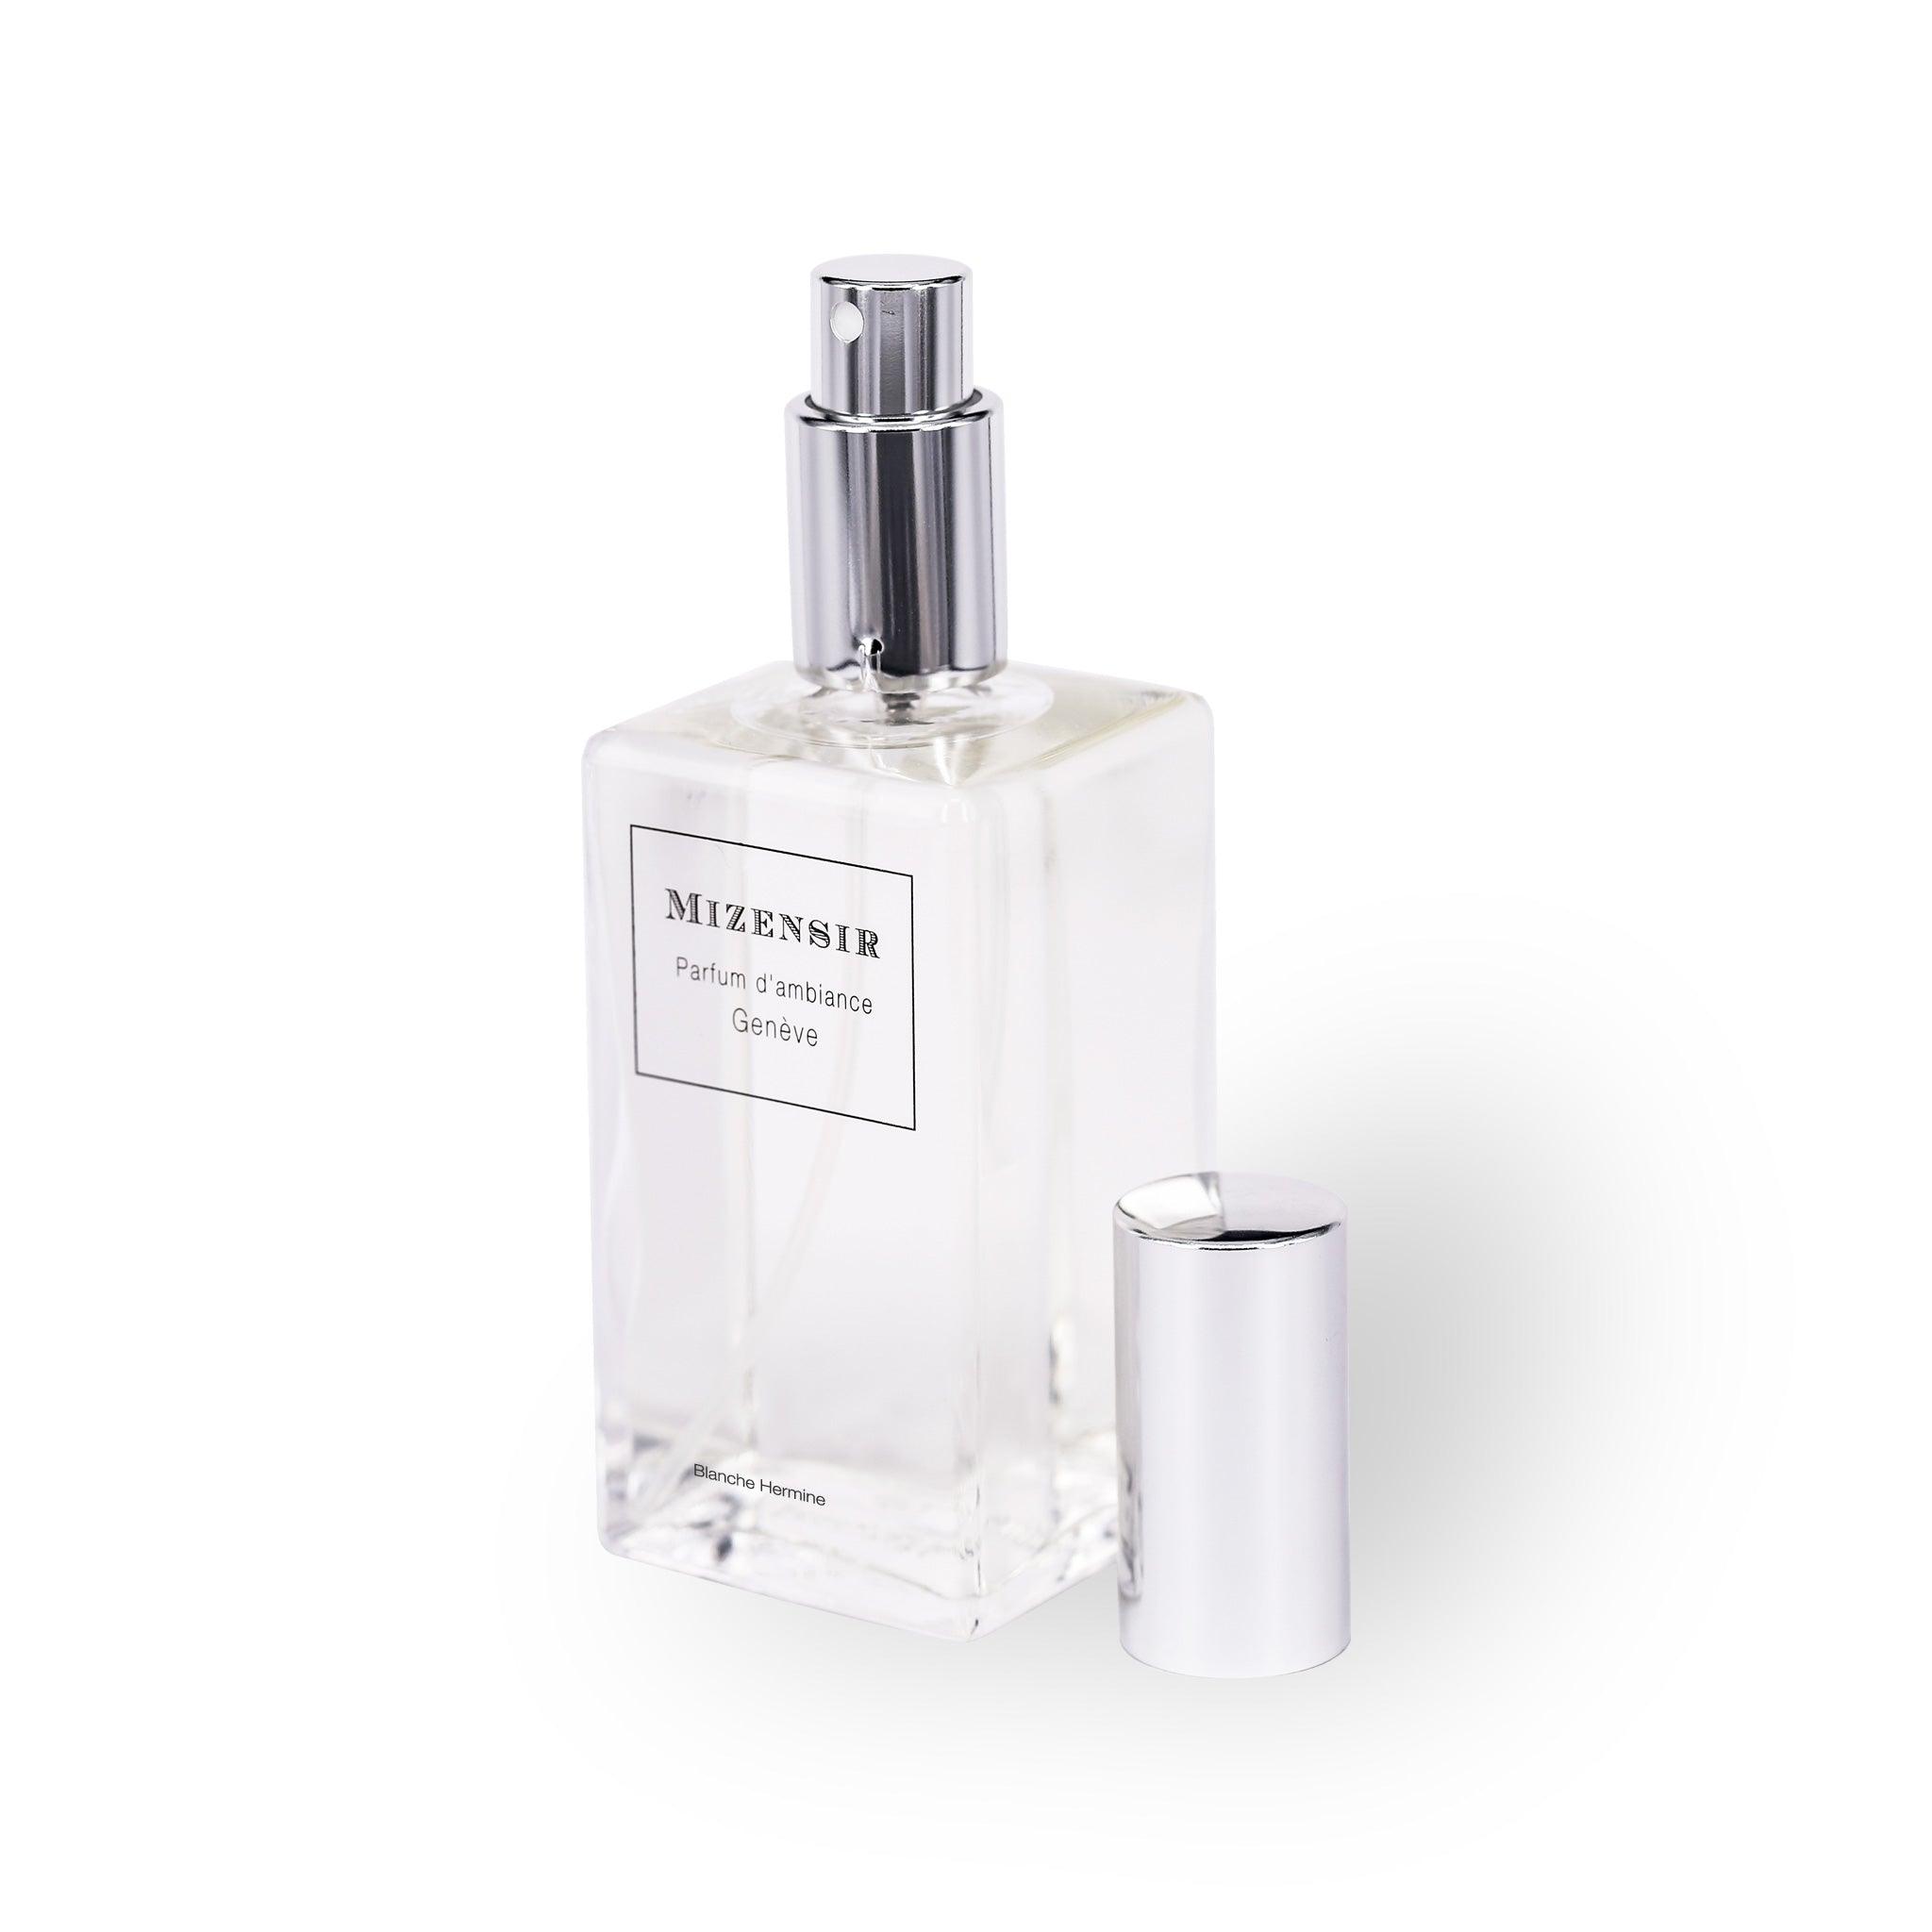 Blanche Hermine | Parfum d'ambiance | Mizensir Genève